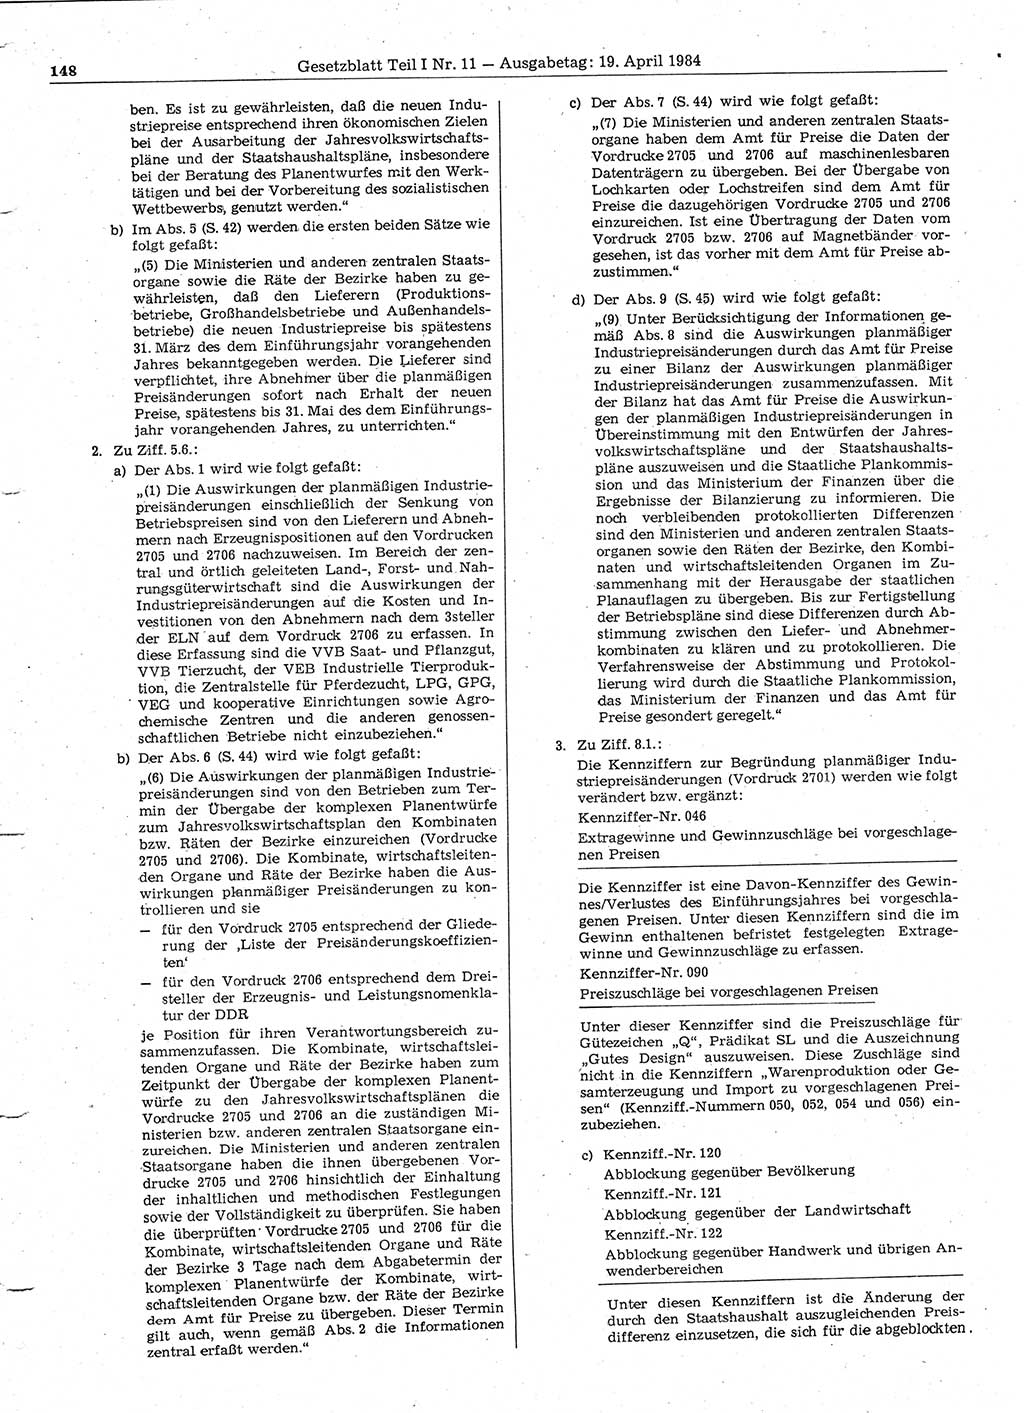 Gesetzblatt (GBl.) der Deutschen Demokratischen Republik (DDR) Teil Ⅰ 1984, Seite 148 (GBl. DDR Ⅰ 1984, S. 148)